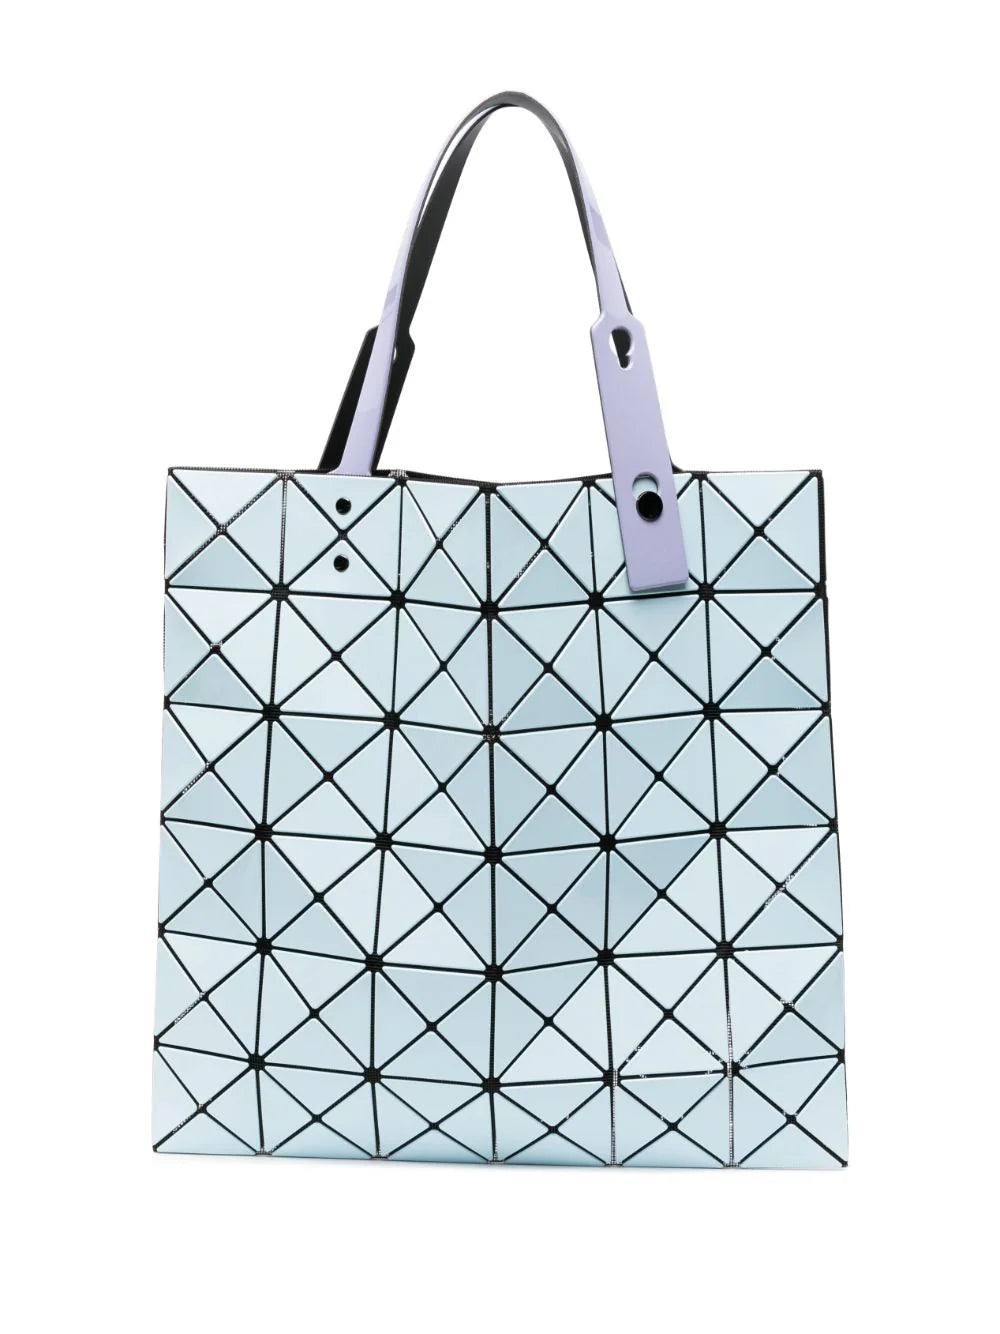 Geometric Clutch Bag Women, Bao Bao Geometric Bag